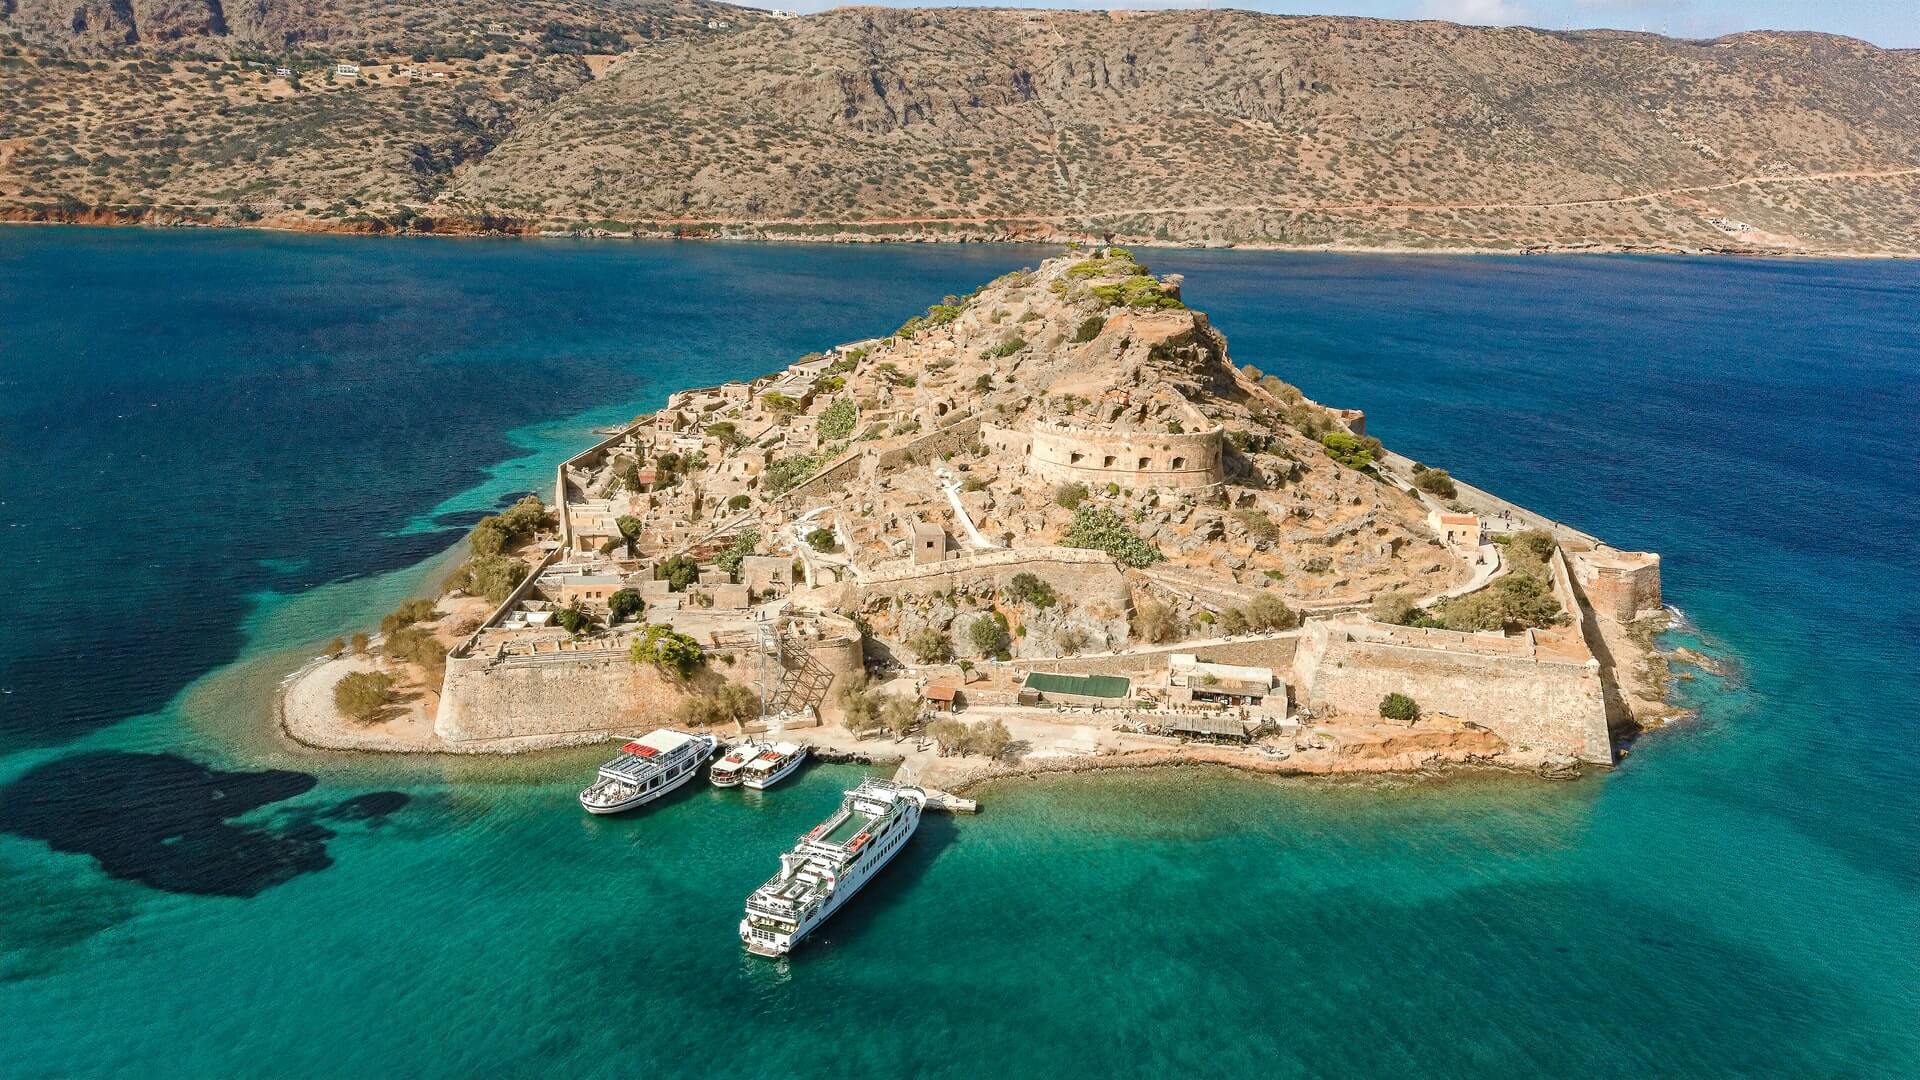 Σπιναλόγκα: Το νησάκι στην Κρήτη που έχει συνδυάσει το όνομά του με την απομόνωση και το θάνατο (φώτο)